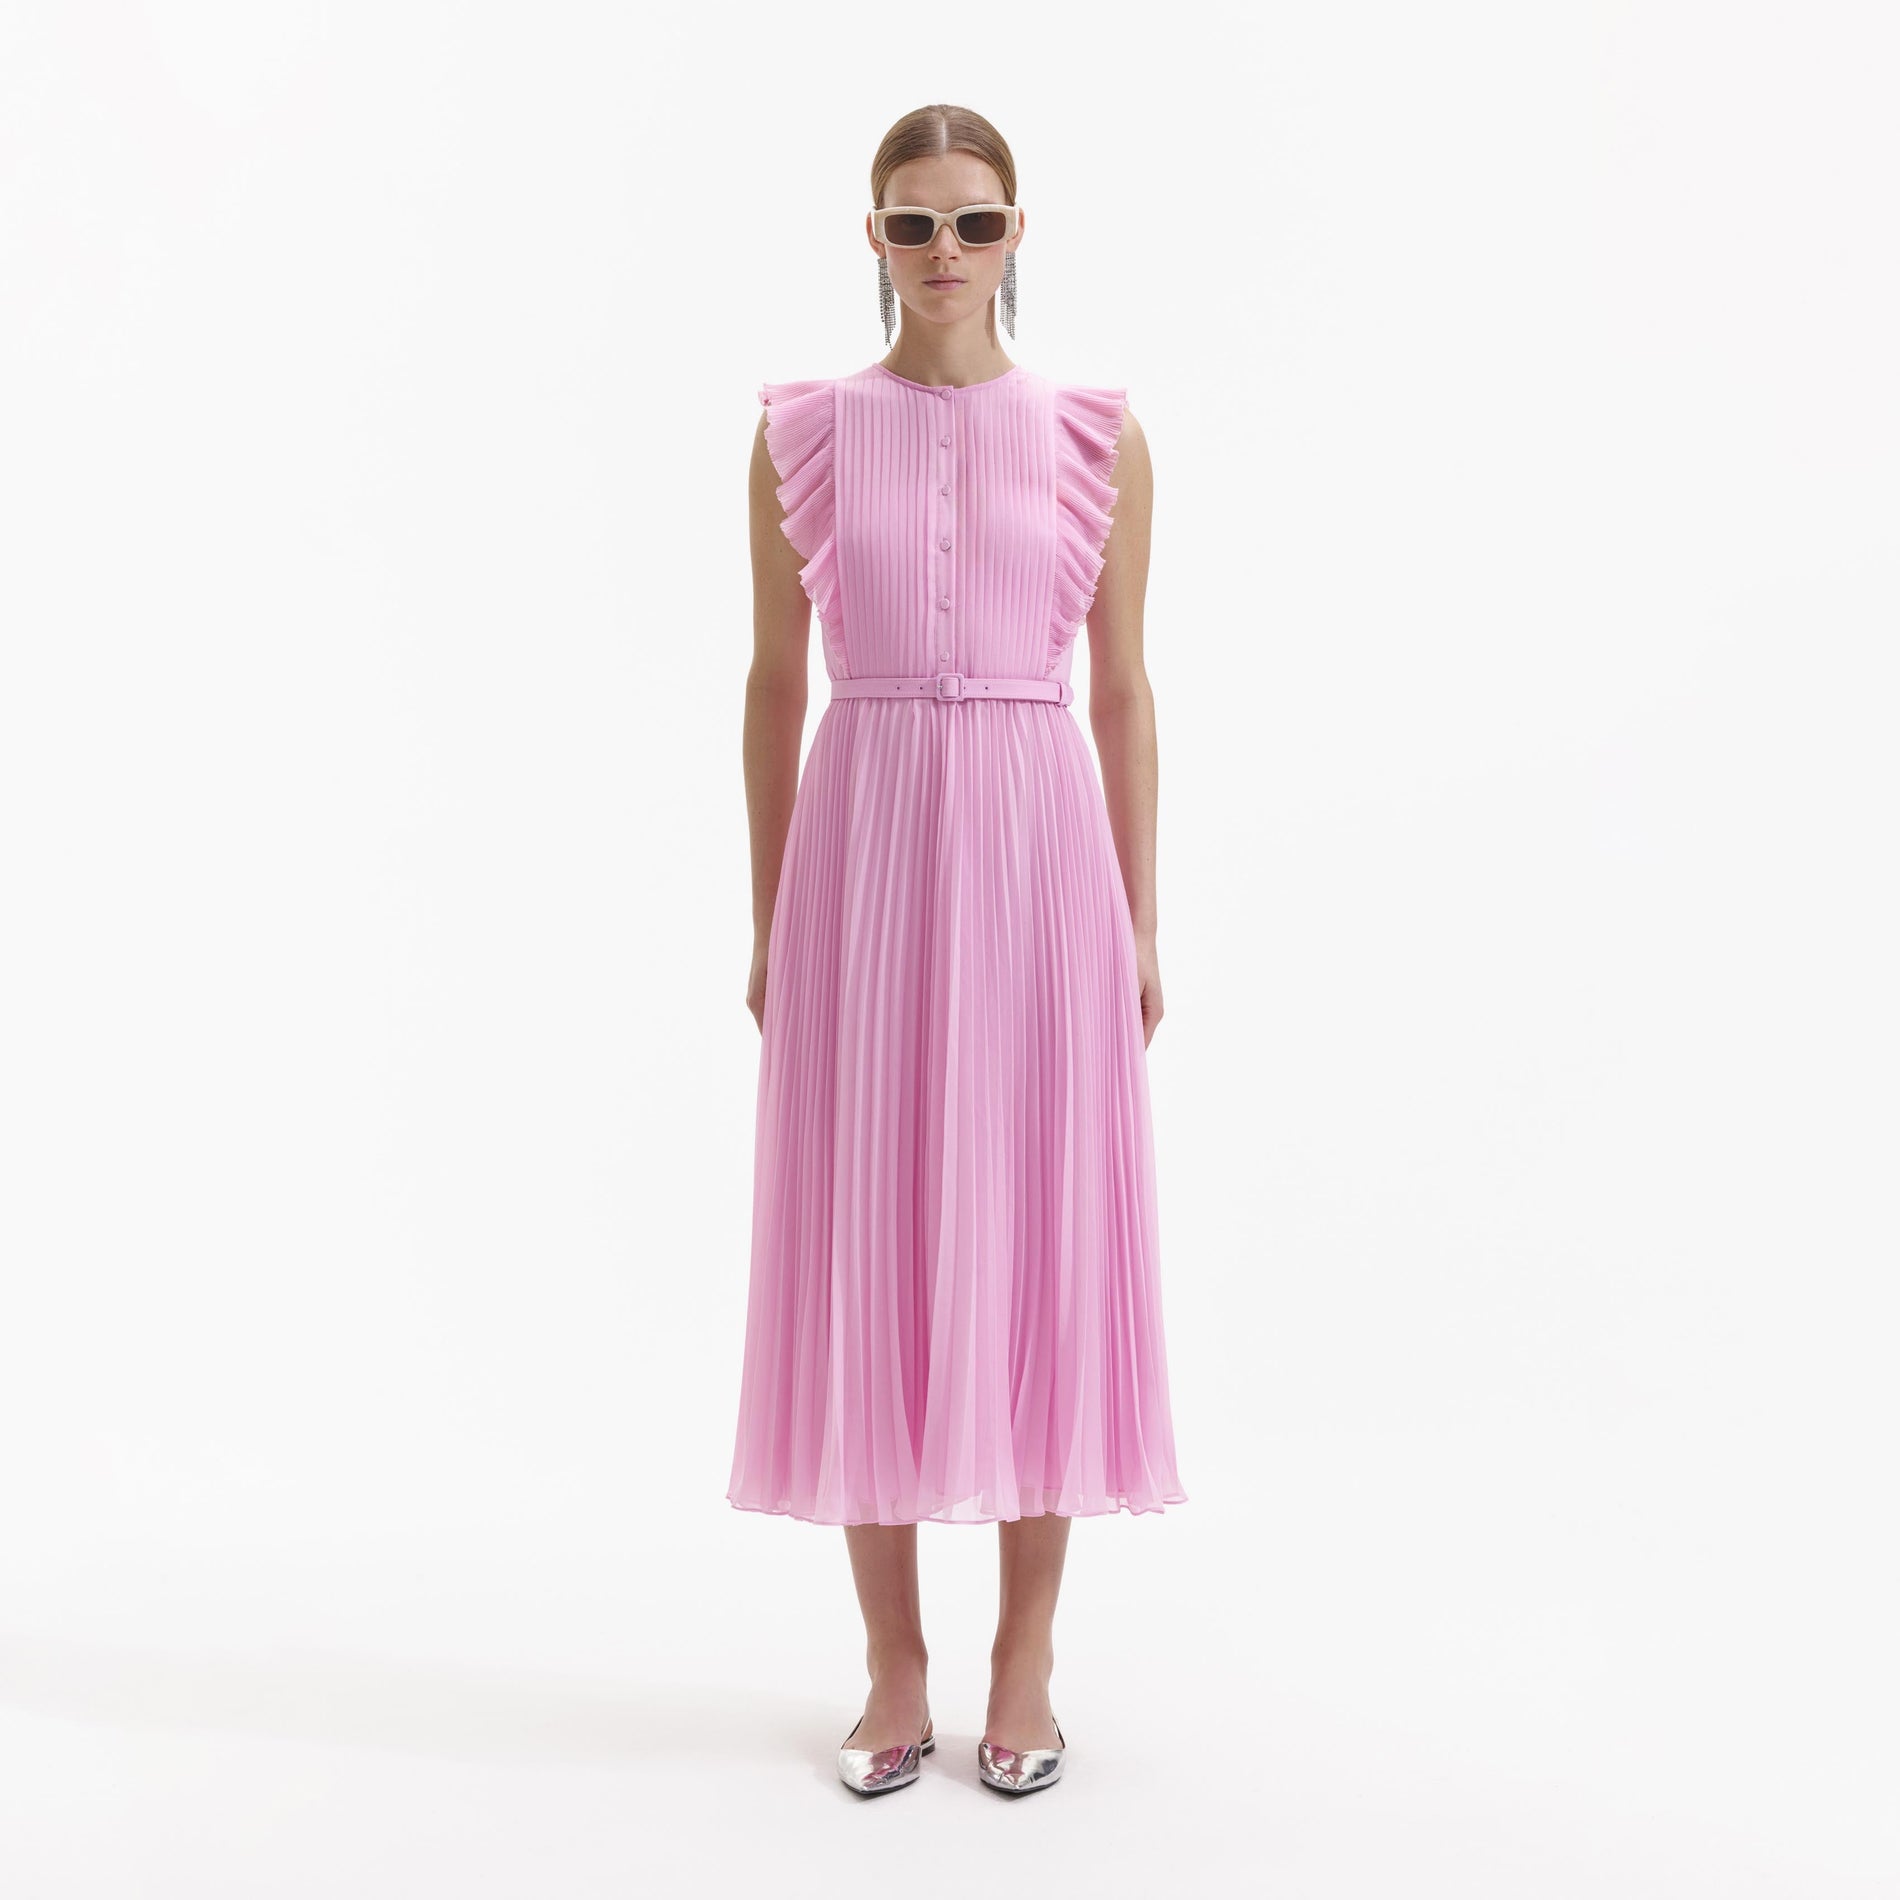 A Woman wearing the Pink Chiffon Sleeveless Tunic Ruffle Midi Dress